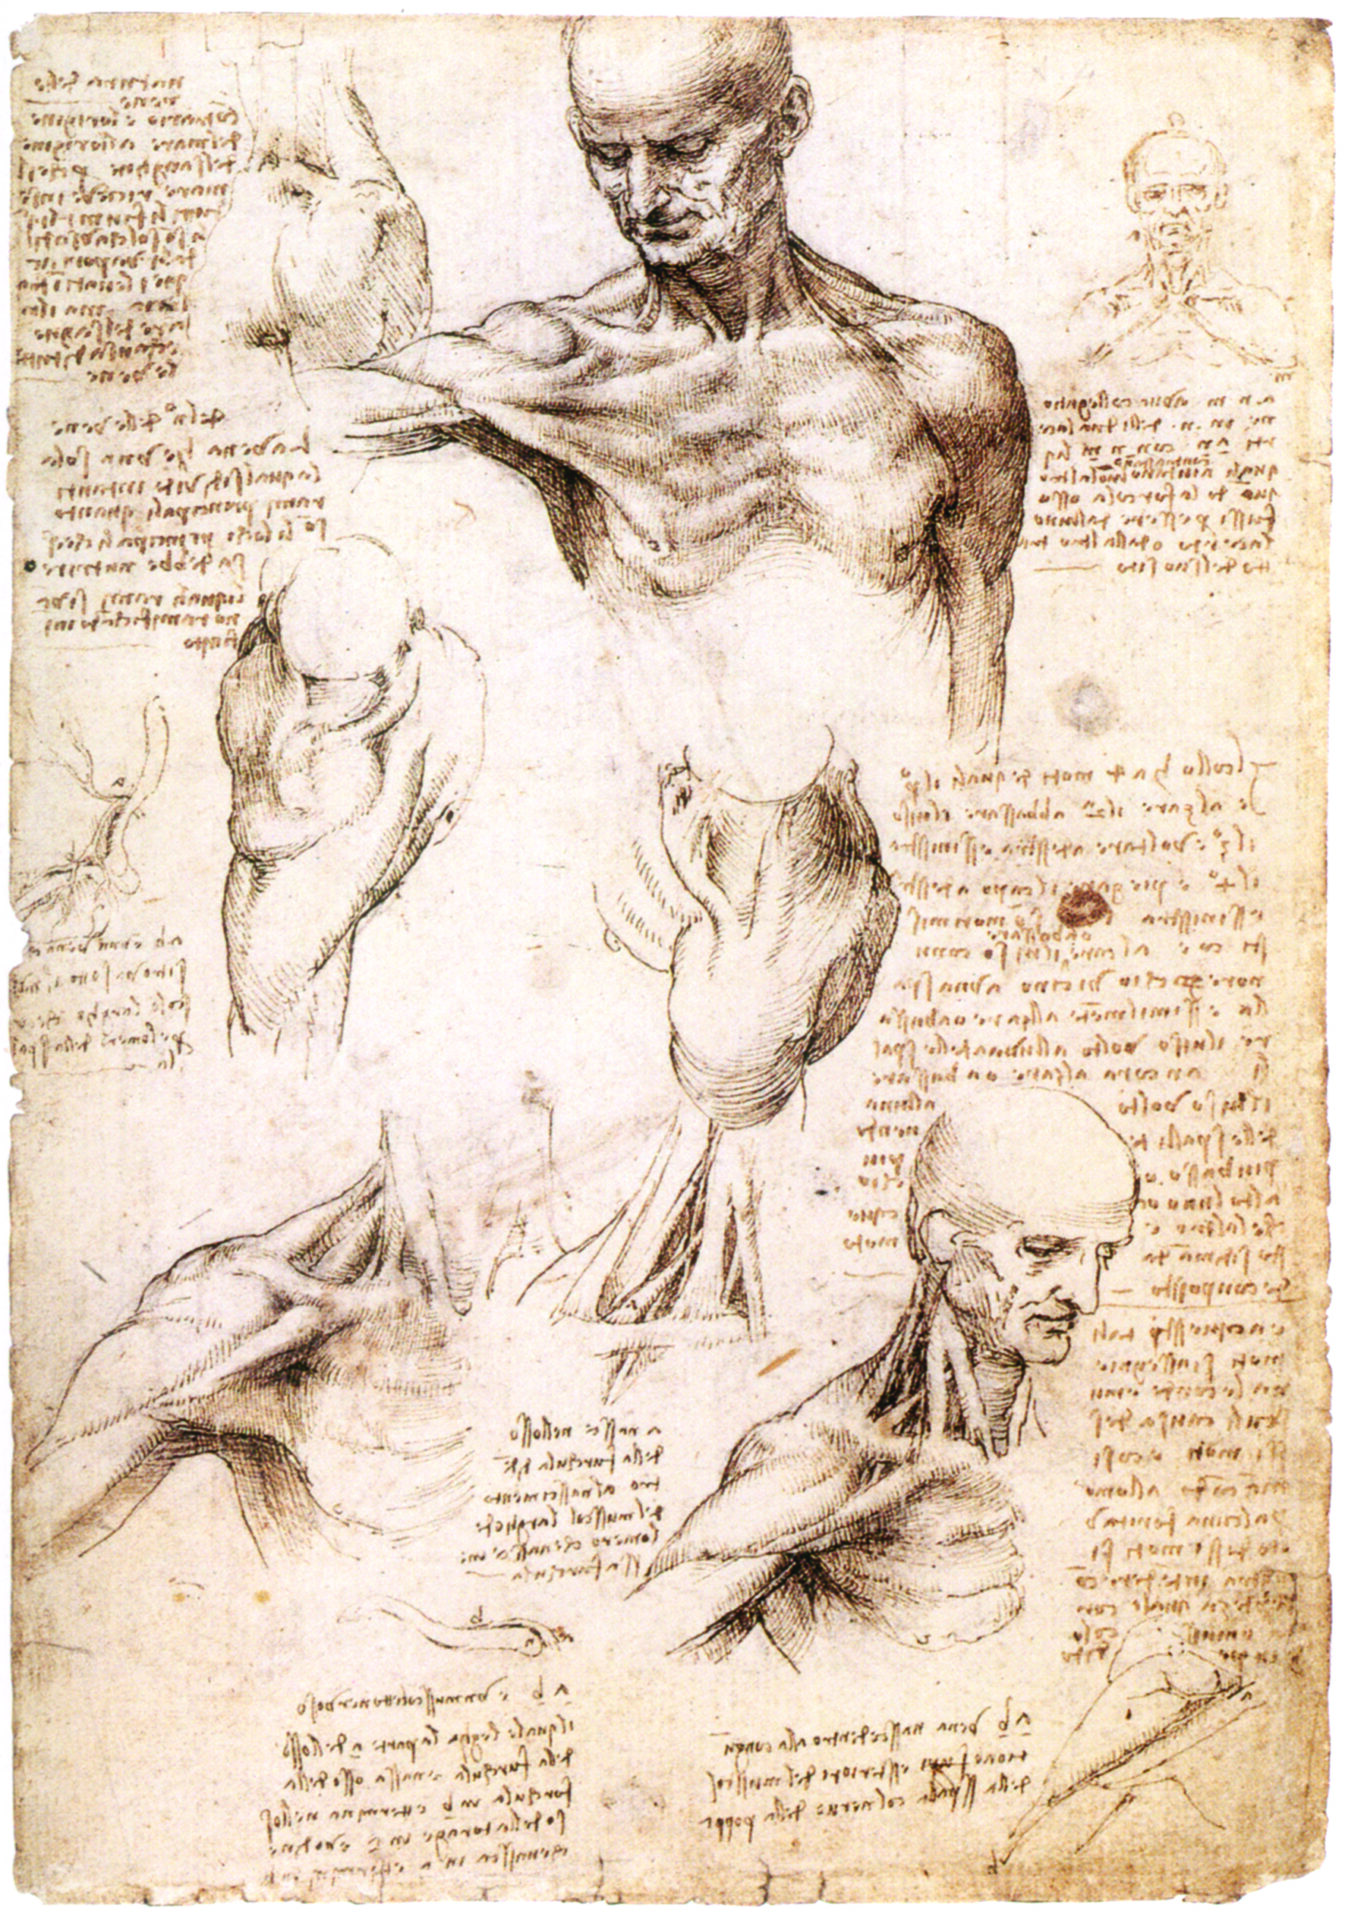 Os Cadernos Anatômicos de Leonardo da Vinci